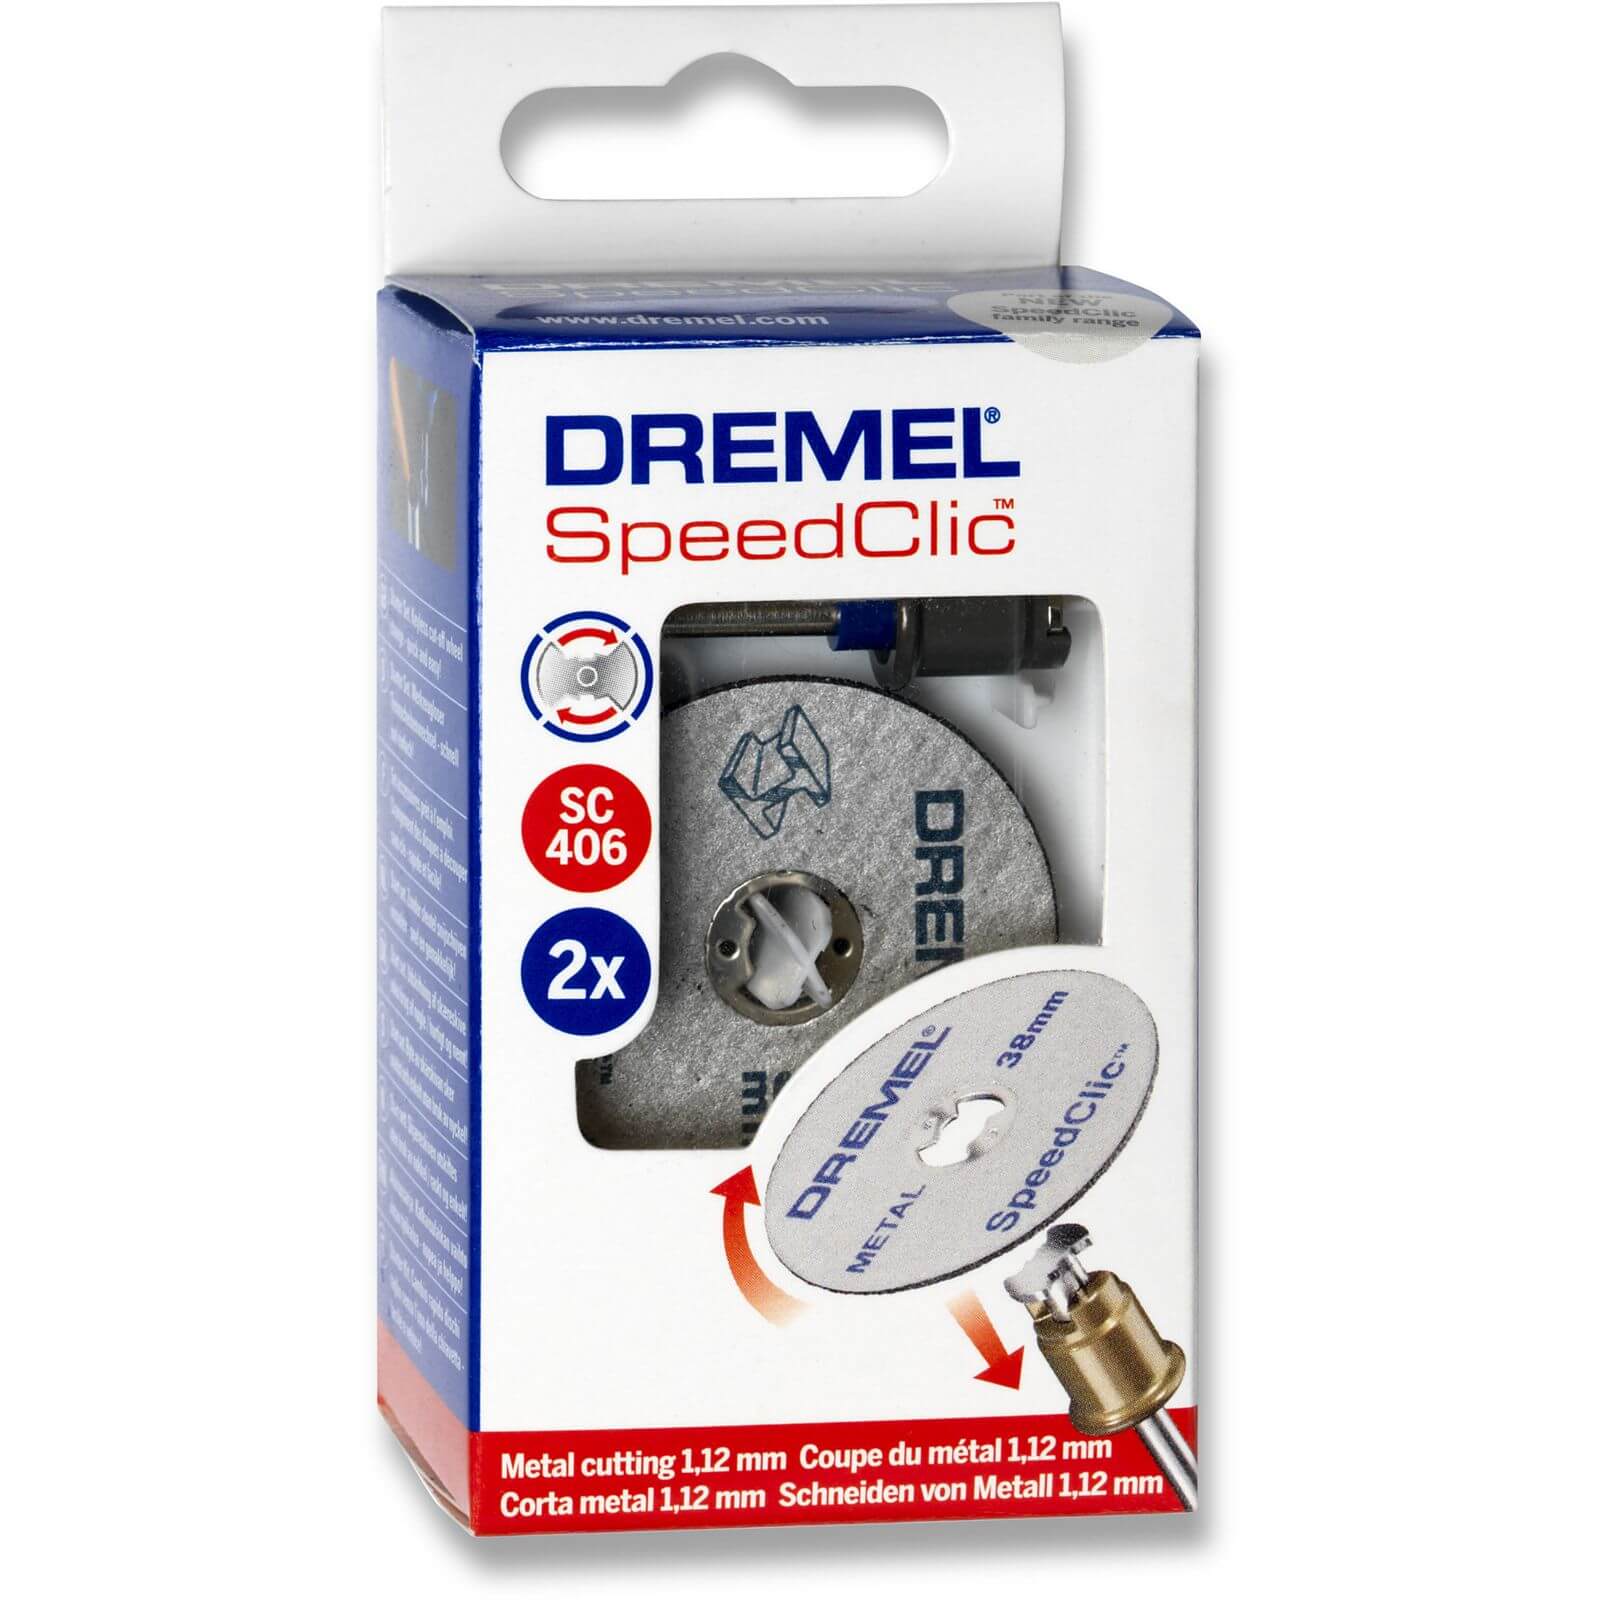 Dremel SpeedClic Starter Kit 406S